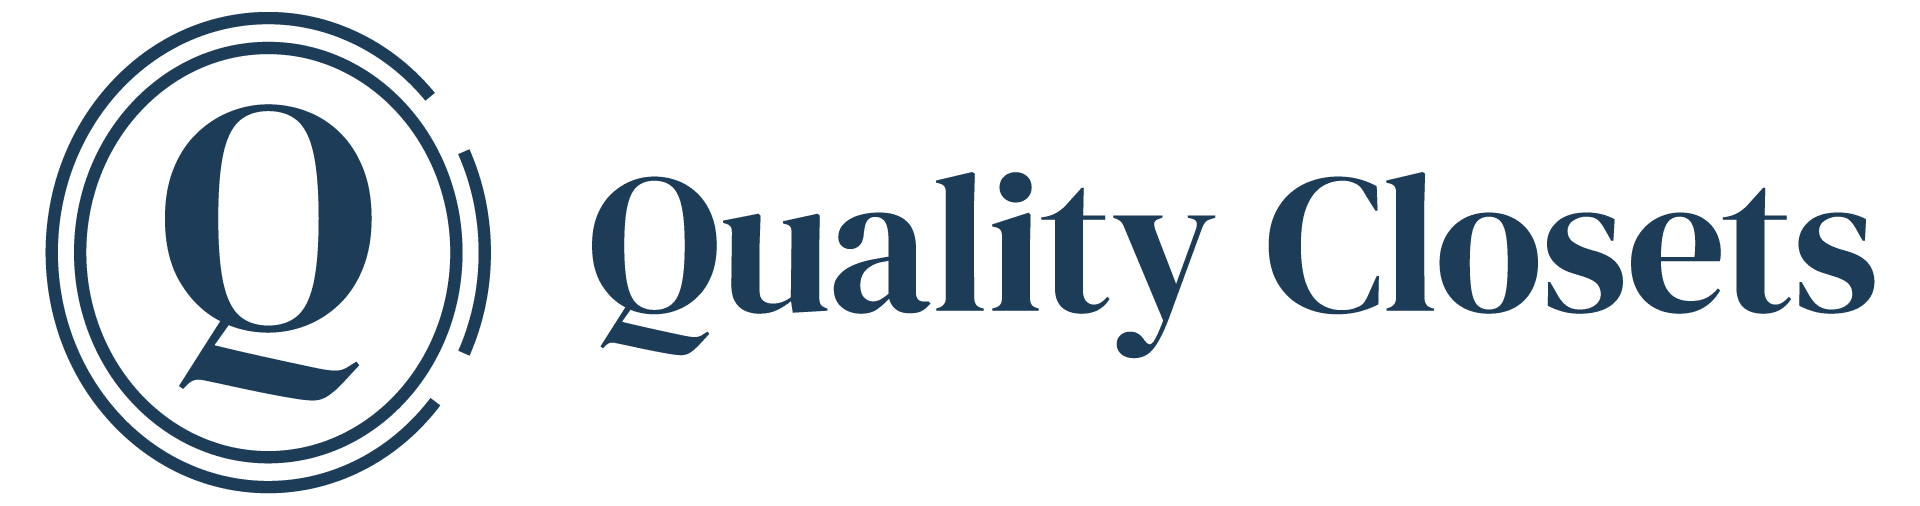 Quality Closets logo